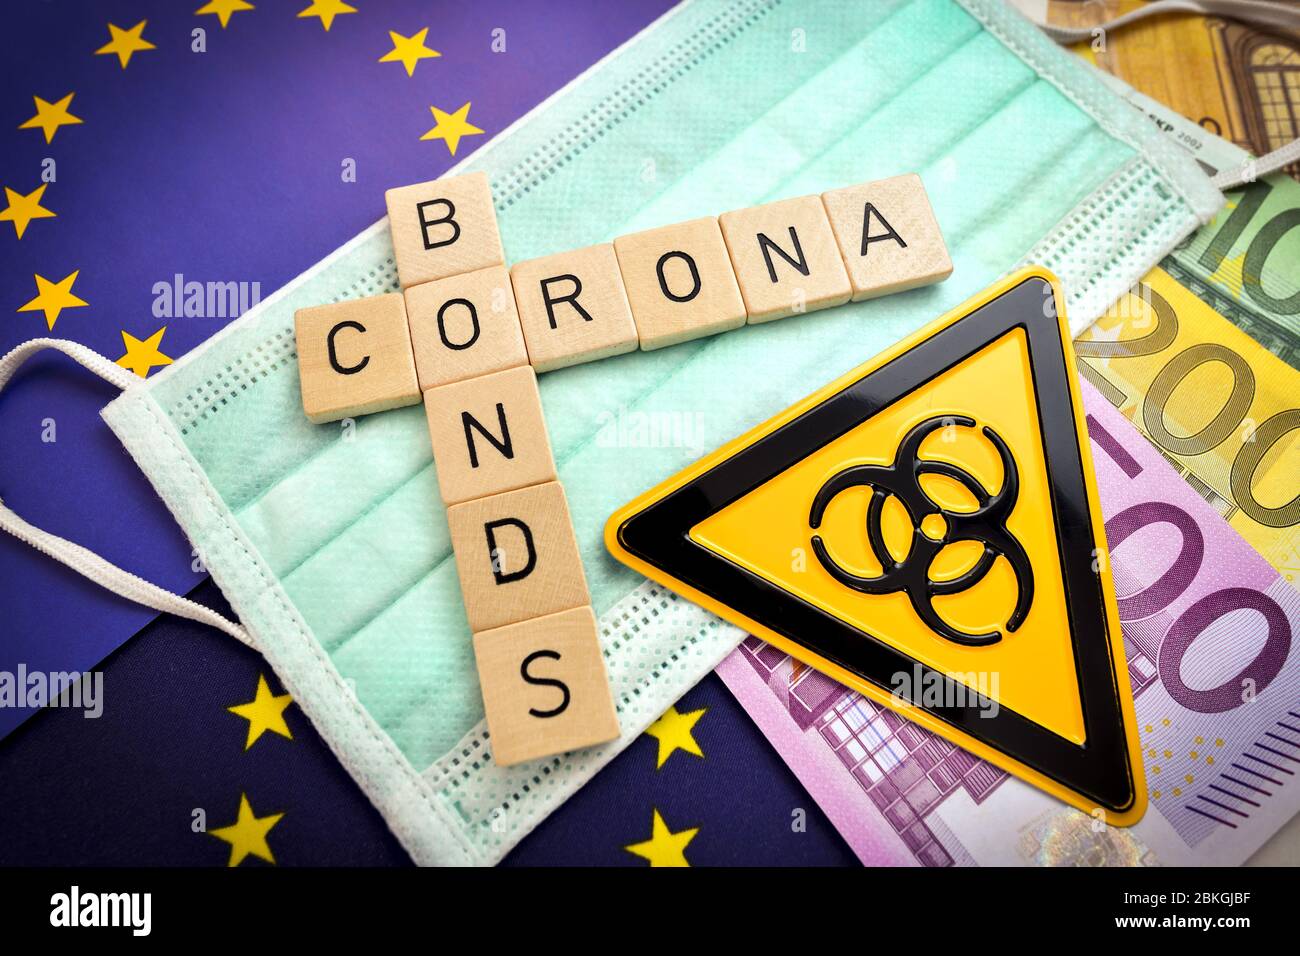 Letras que deletean la palabra corona Bonds en una máscara y bandera europea / Buchstaben bilden den Schriftzug Corona-Bonds auf Mundschutz und Europa-Fahne Foto de stock